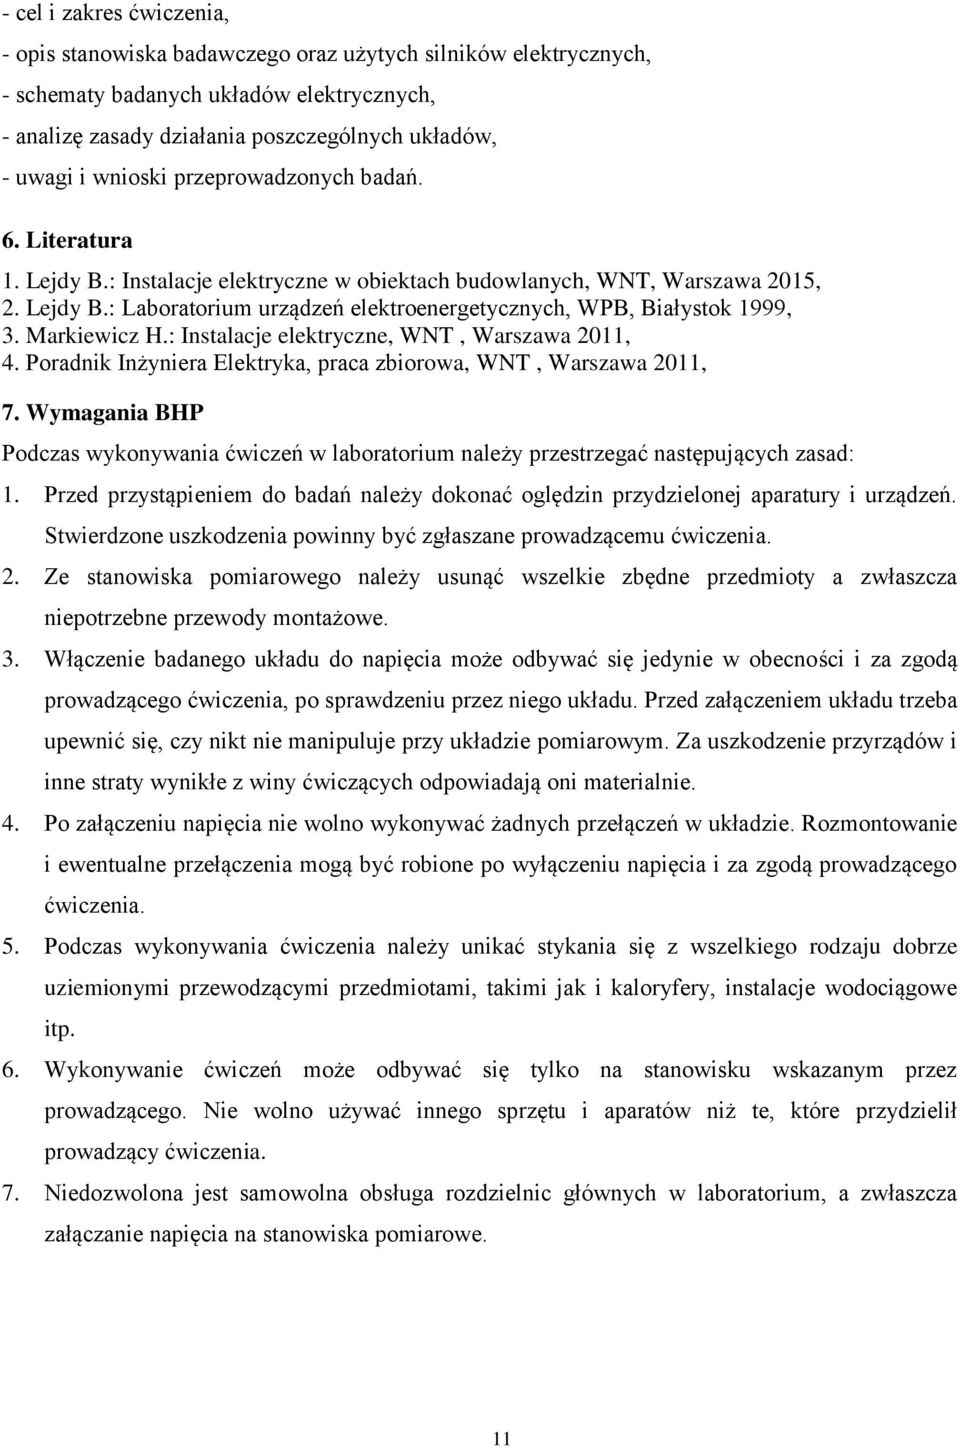 Markiewicz H.: Instalacje elektryczne, WNT, Warszawa 2011, 4. Poradnik Inżyniera Elektryka, praca zbiorowa, WNT, Warszawa 2011, 7.